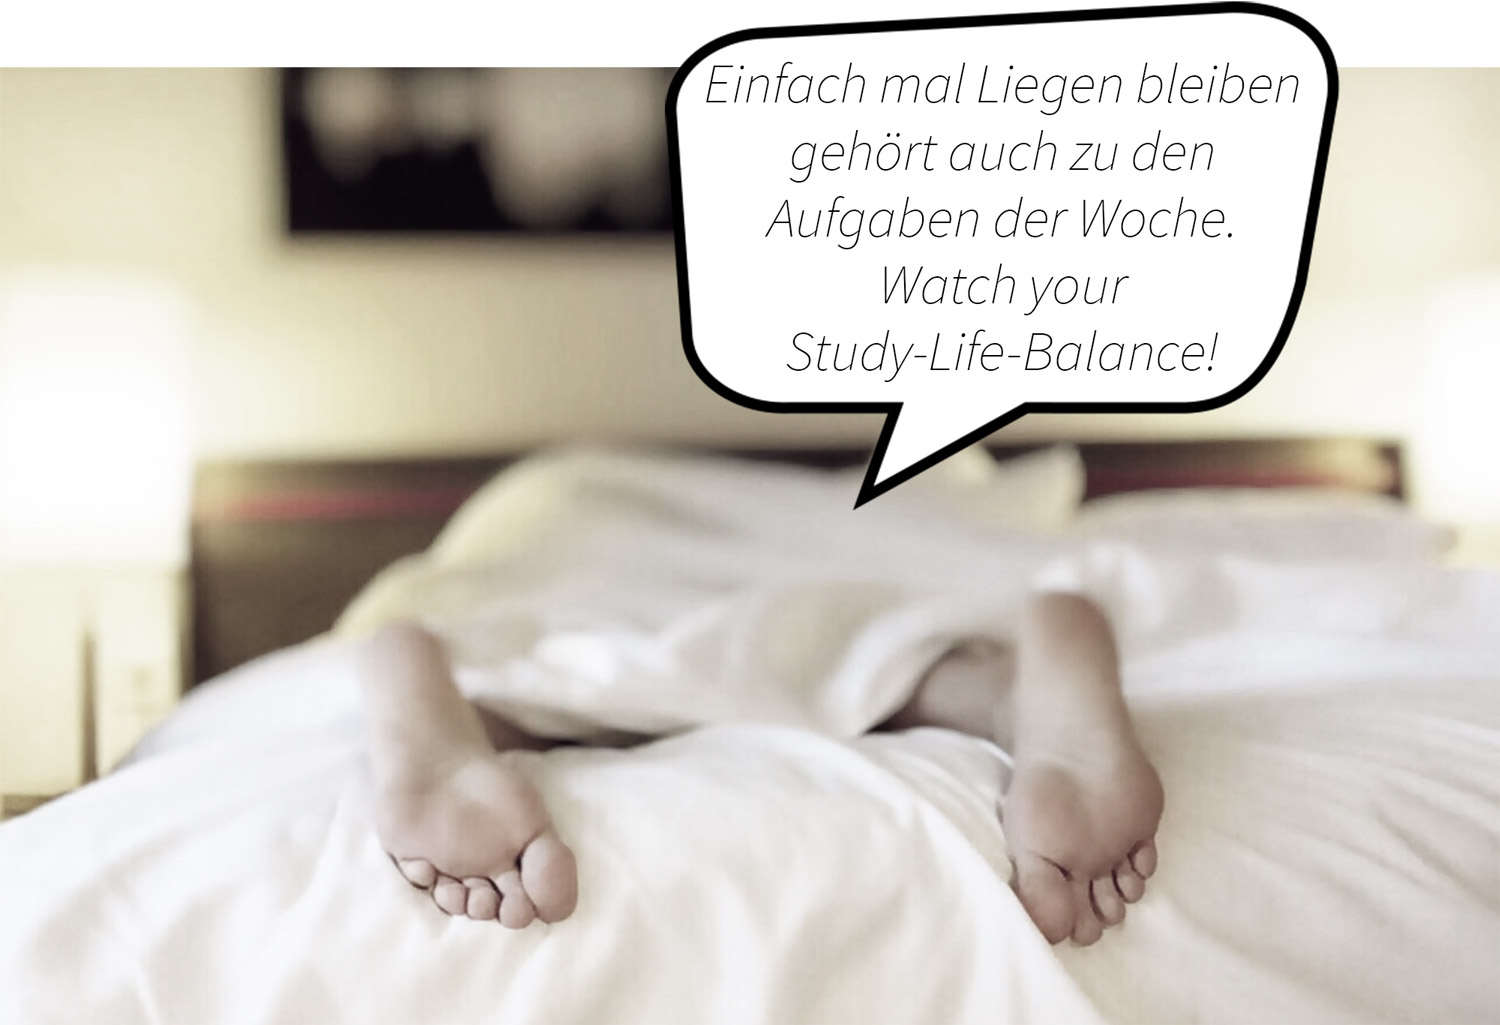 Füße gucken unter einer Bettdecke hervor. Sprechblasentext: Einfach mal liegen bleiben, gehört auch zu den Aufgaben der Woche. Watch your Study-Life-Balance!